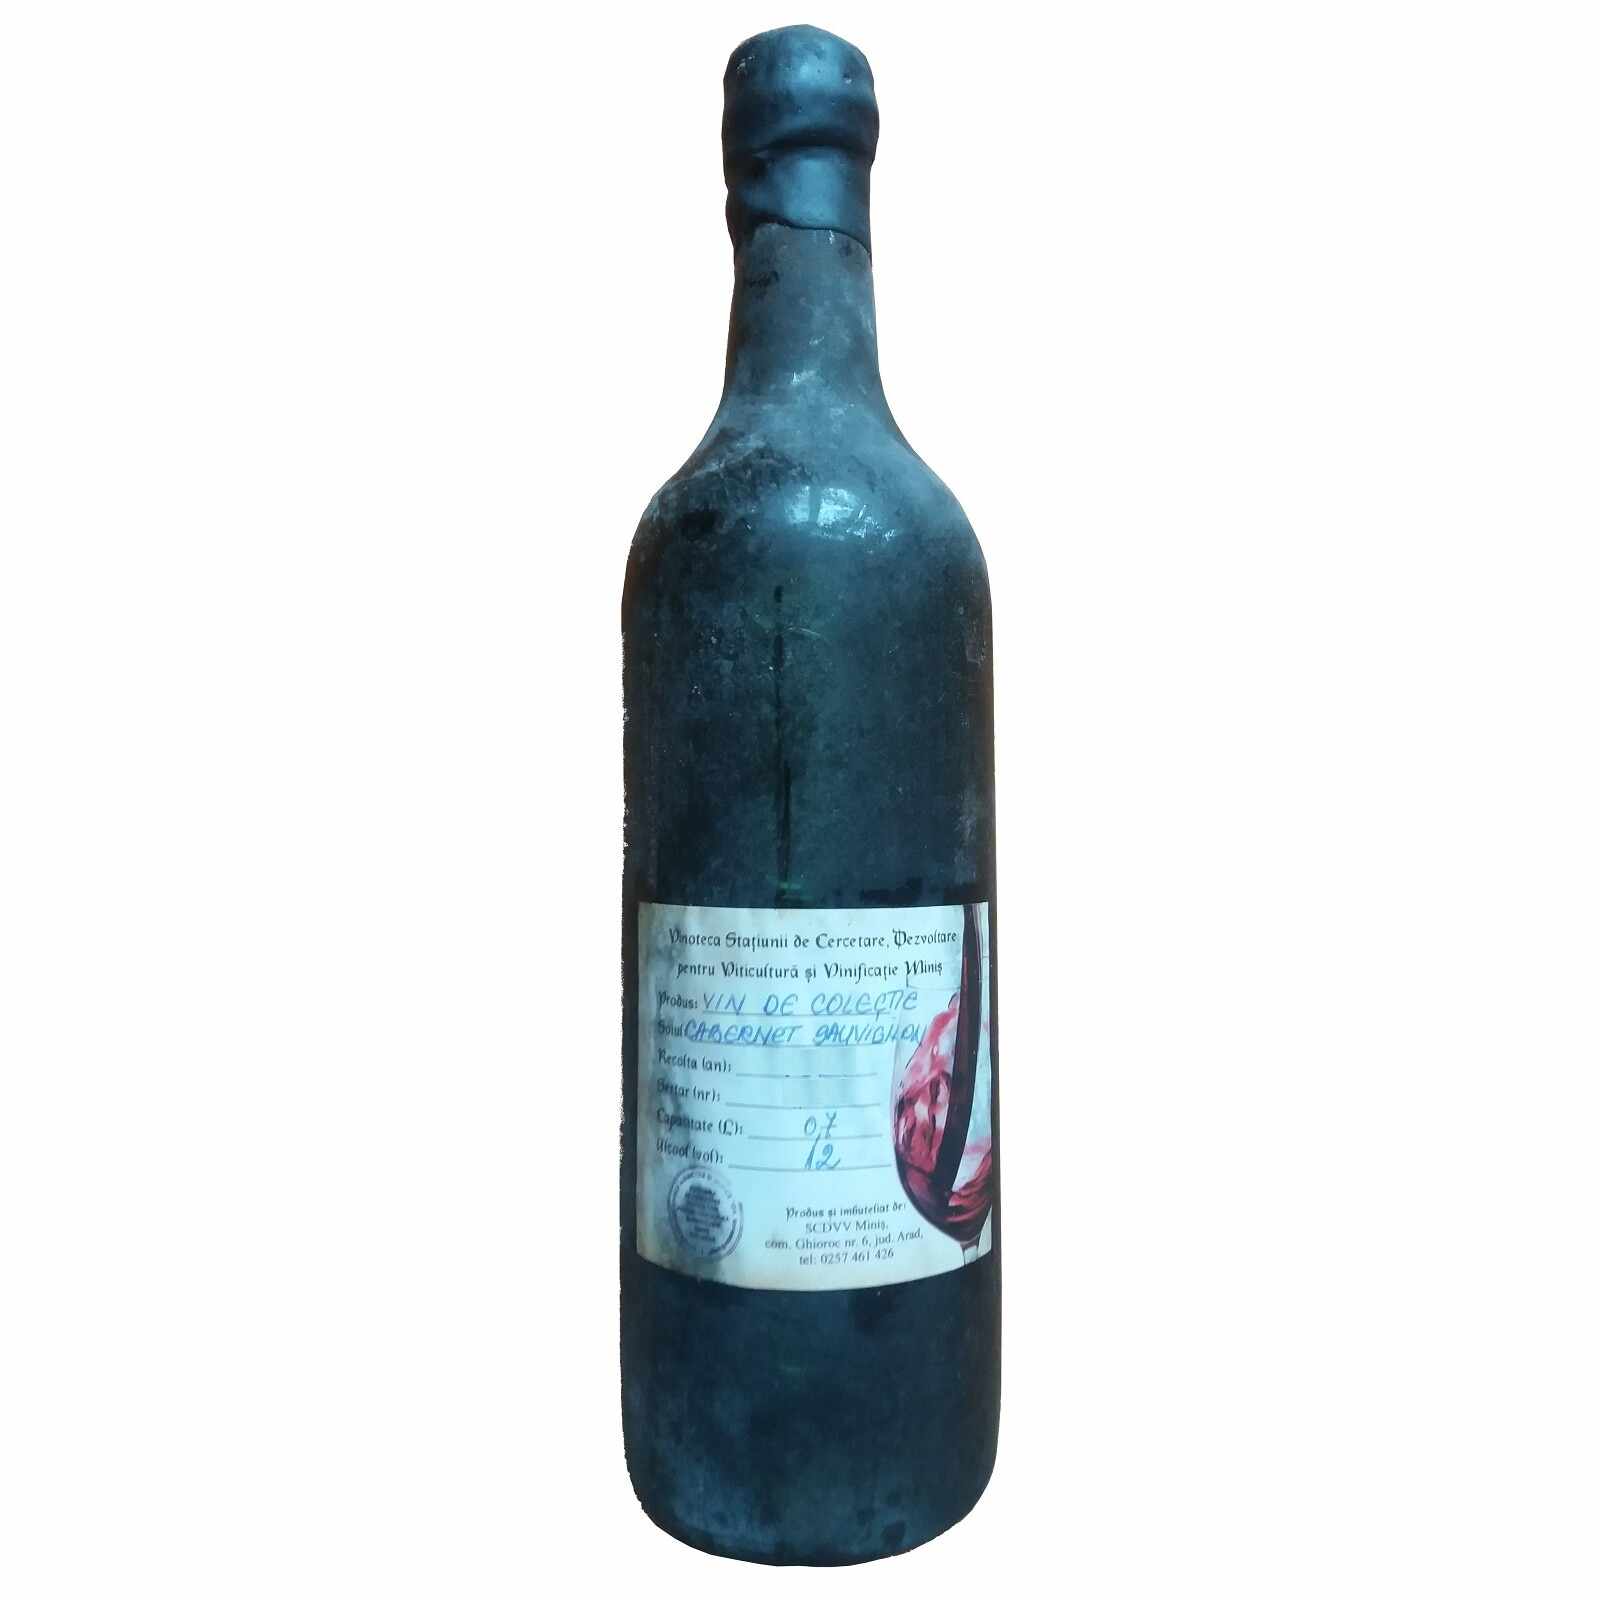 Vin de colectie Minis Cabernet Sauvignon 1982 rosu, in cutie lemn, 0.7L